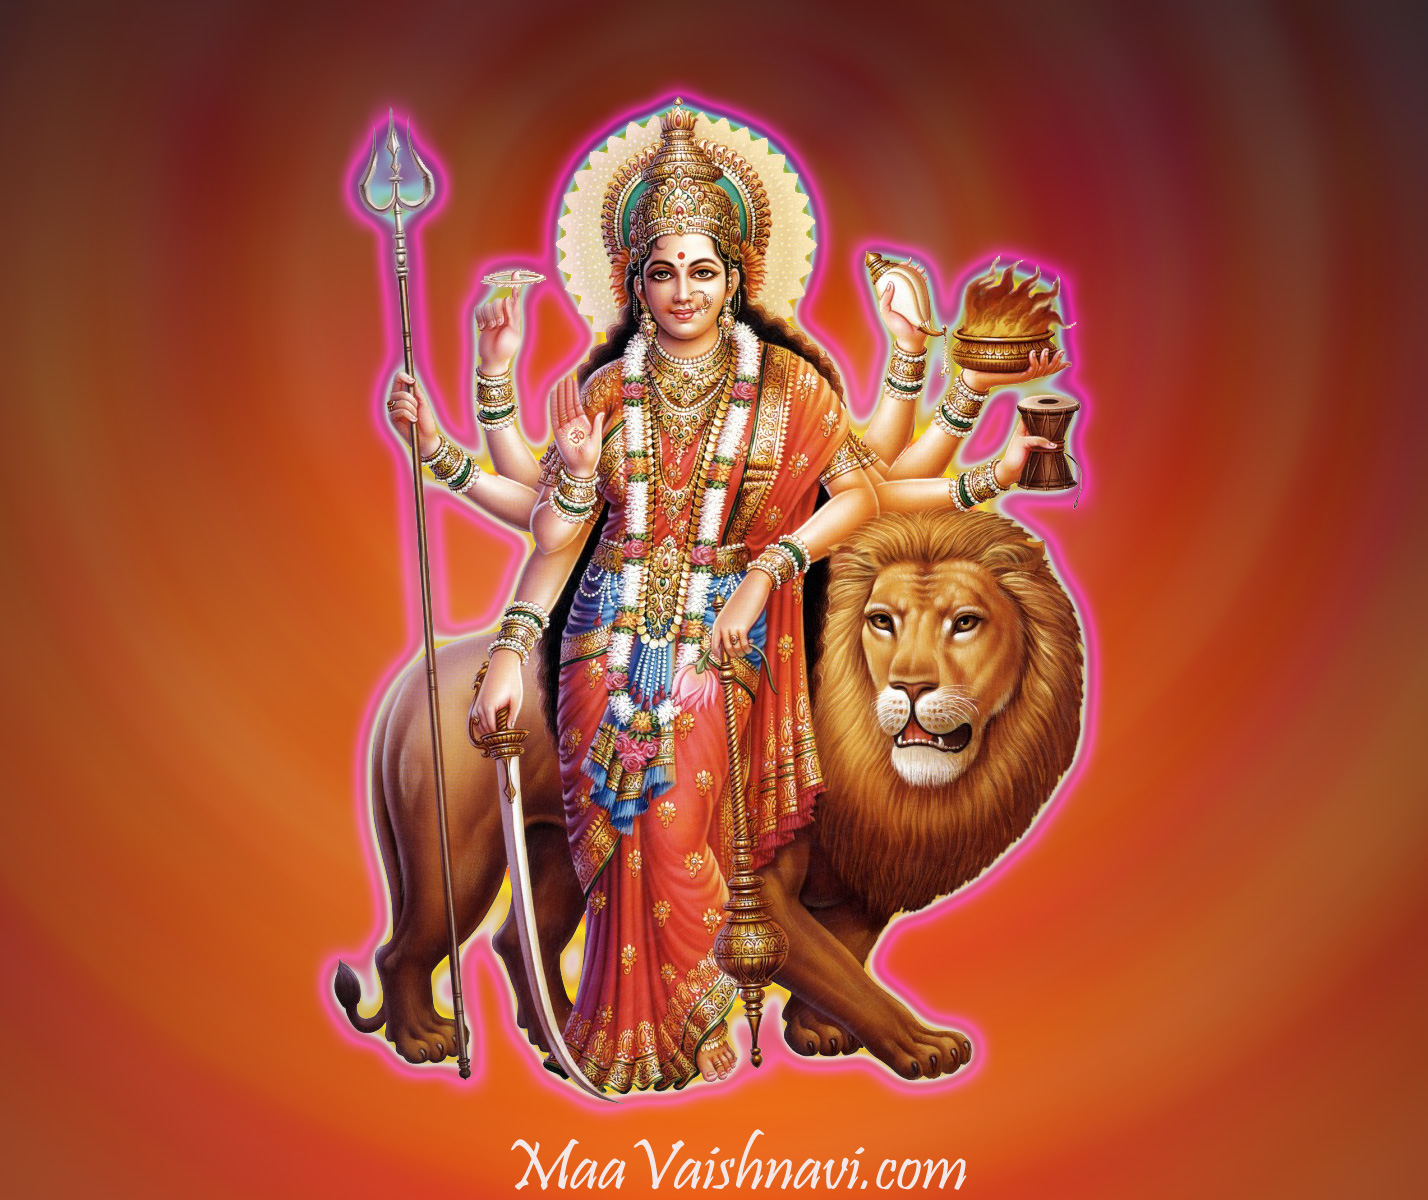 Jai Mata Di Godess Durga - Durga Maa Image 3d - 1428x1200 Wallpaper -  